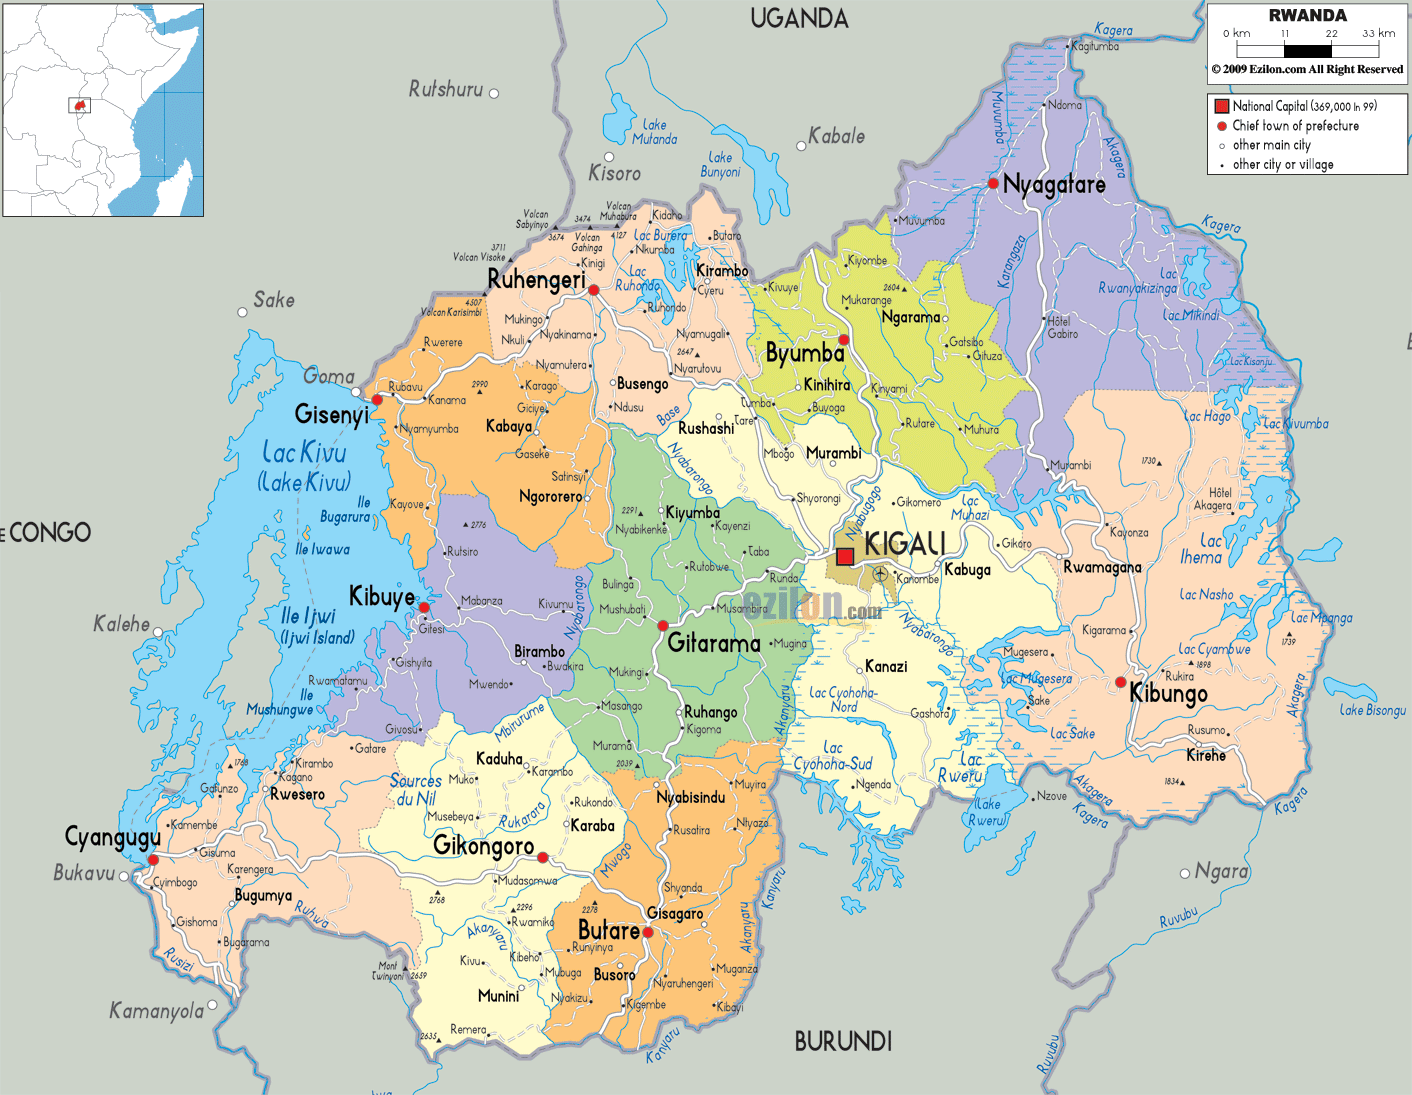 RWANDA - GEOGRAPHICAL MAPS OF RWANDA